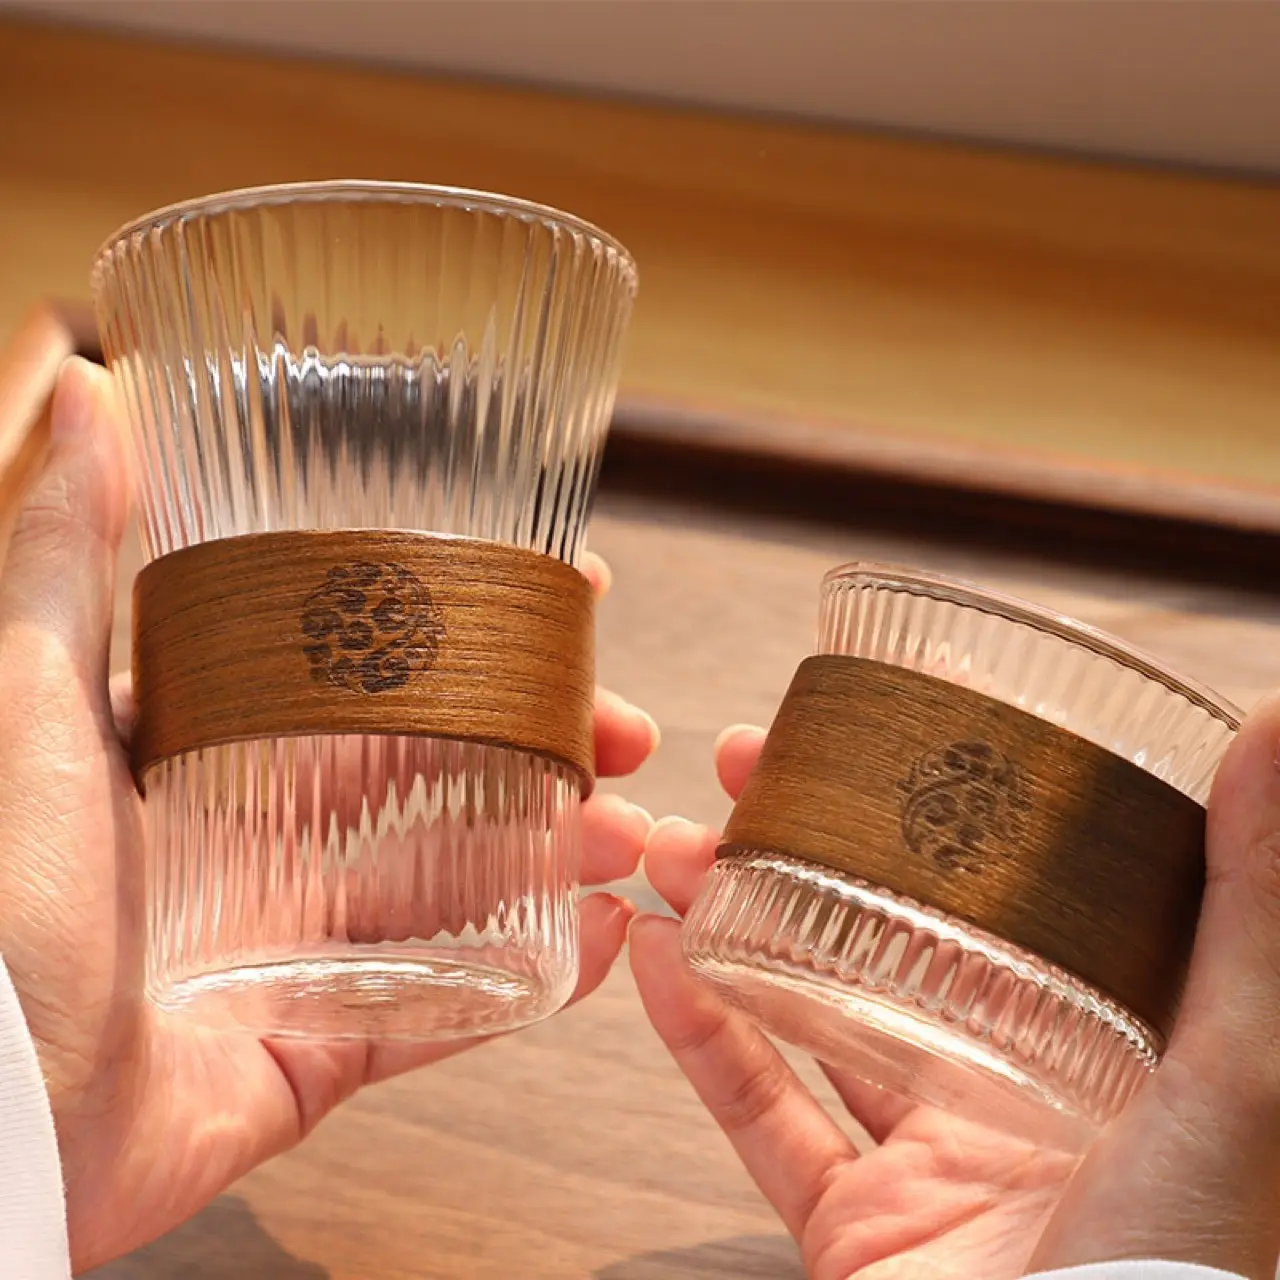 Hohe Erscheinung hitze beständige Glas Taillen bund Wasser Tasse handgemachte Kaffee vertikale Muster heiße Tee tasse